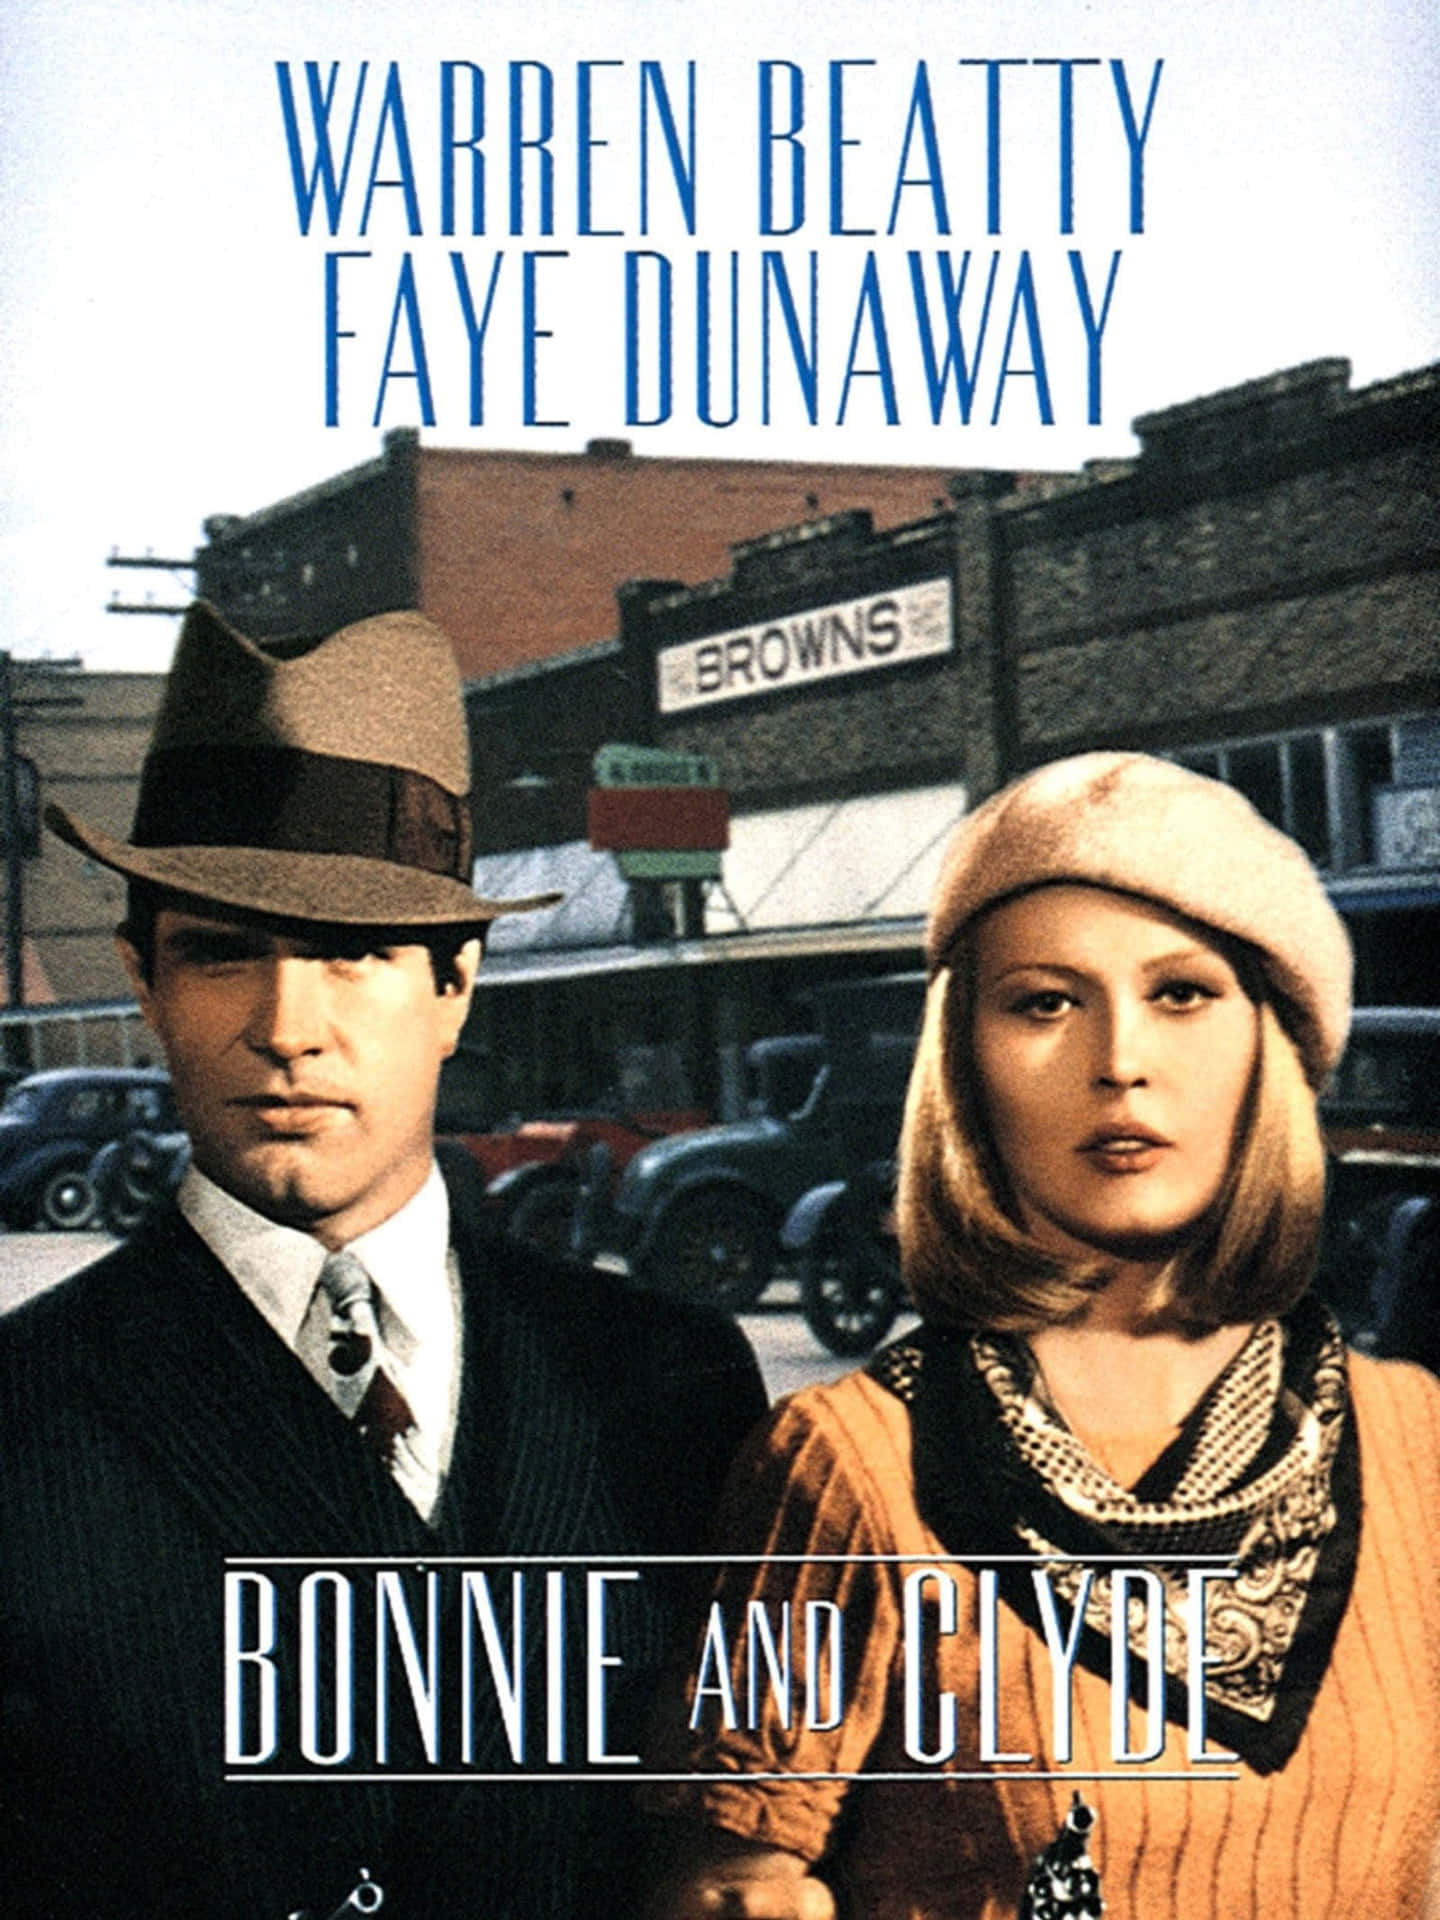 Vivendola Vita In Viaggio, Bonnie E Clyde Erano Destinati A Un Cammino Fatale.